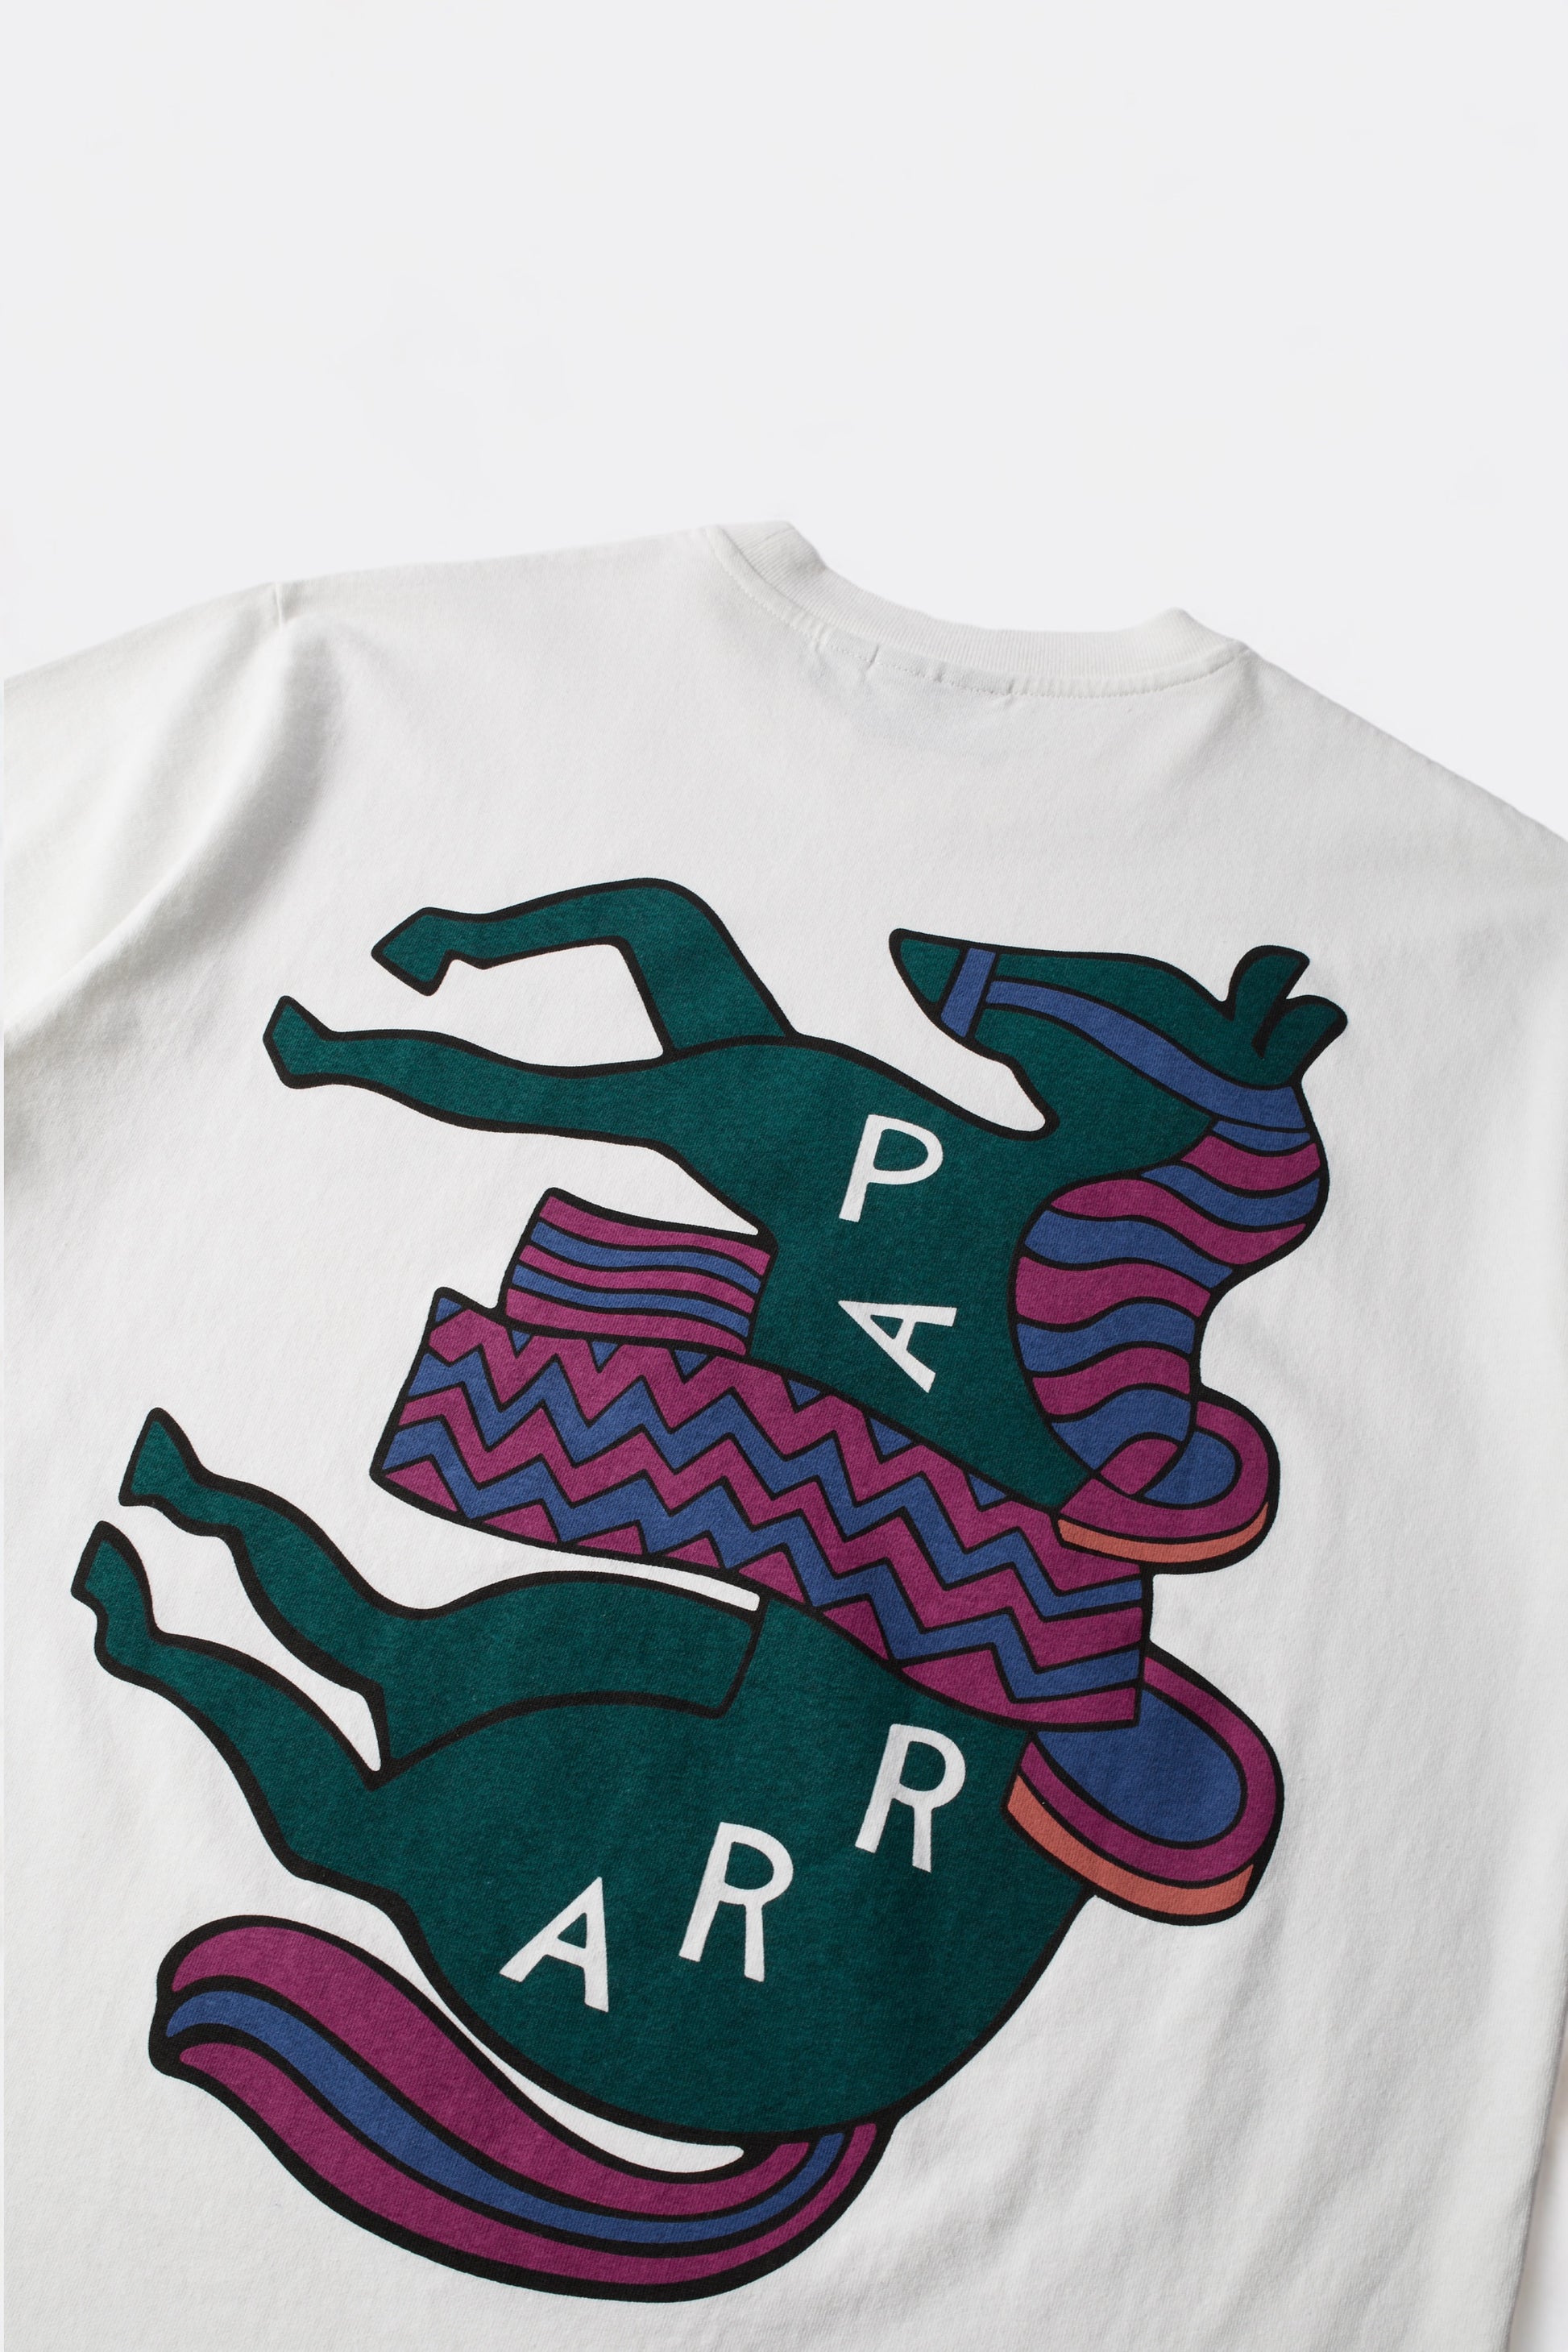 Parra - Fancy Horse T-Shirt (White)